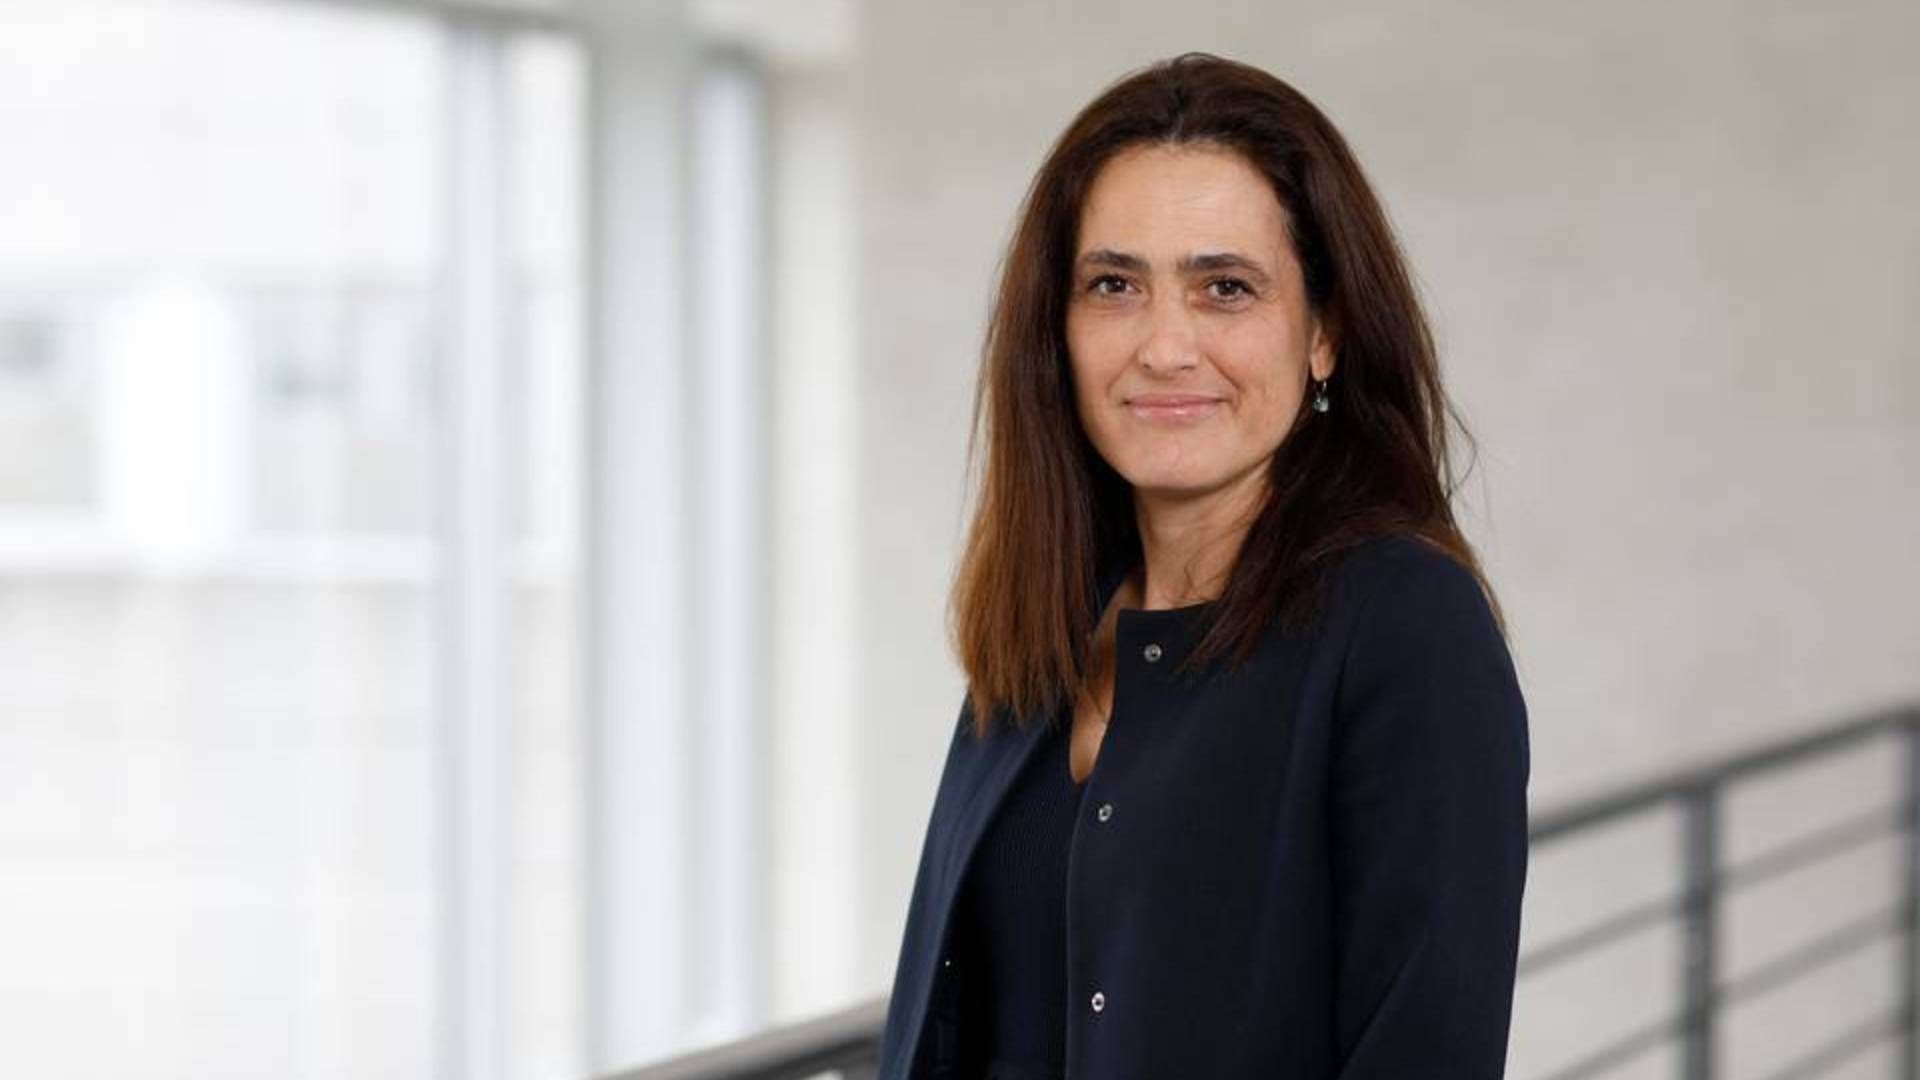 Spanske Ester Baiget overtager posten som Novozymes-topchef Peder Holk Nielsen 1. februar. Hun bliver den 11 udenlandske topchef blandt C25-selskaberne. | Foto: NOVOZYMES